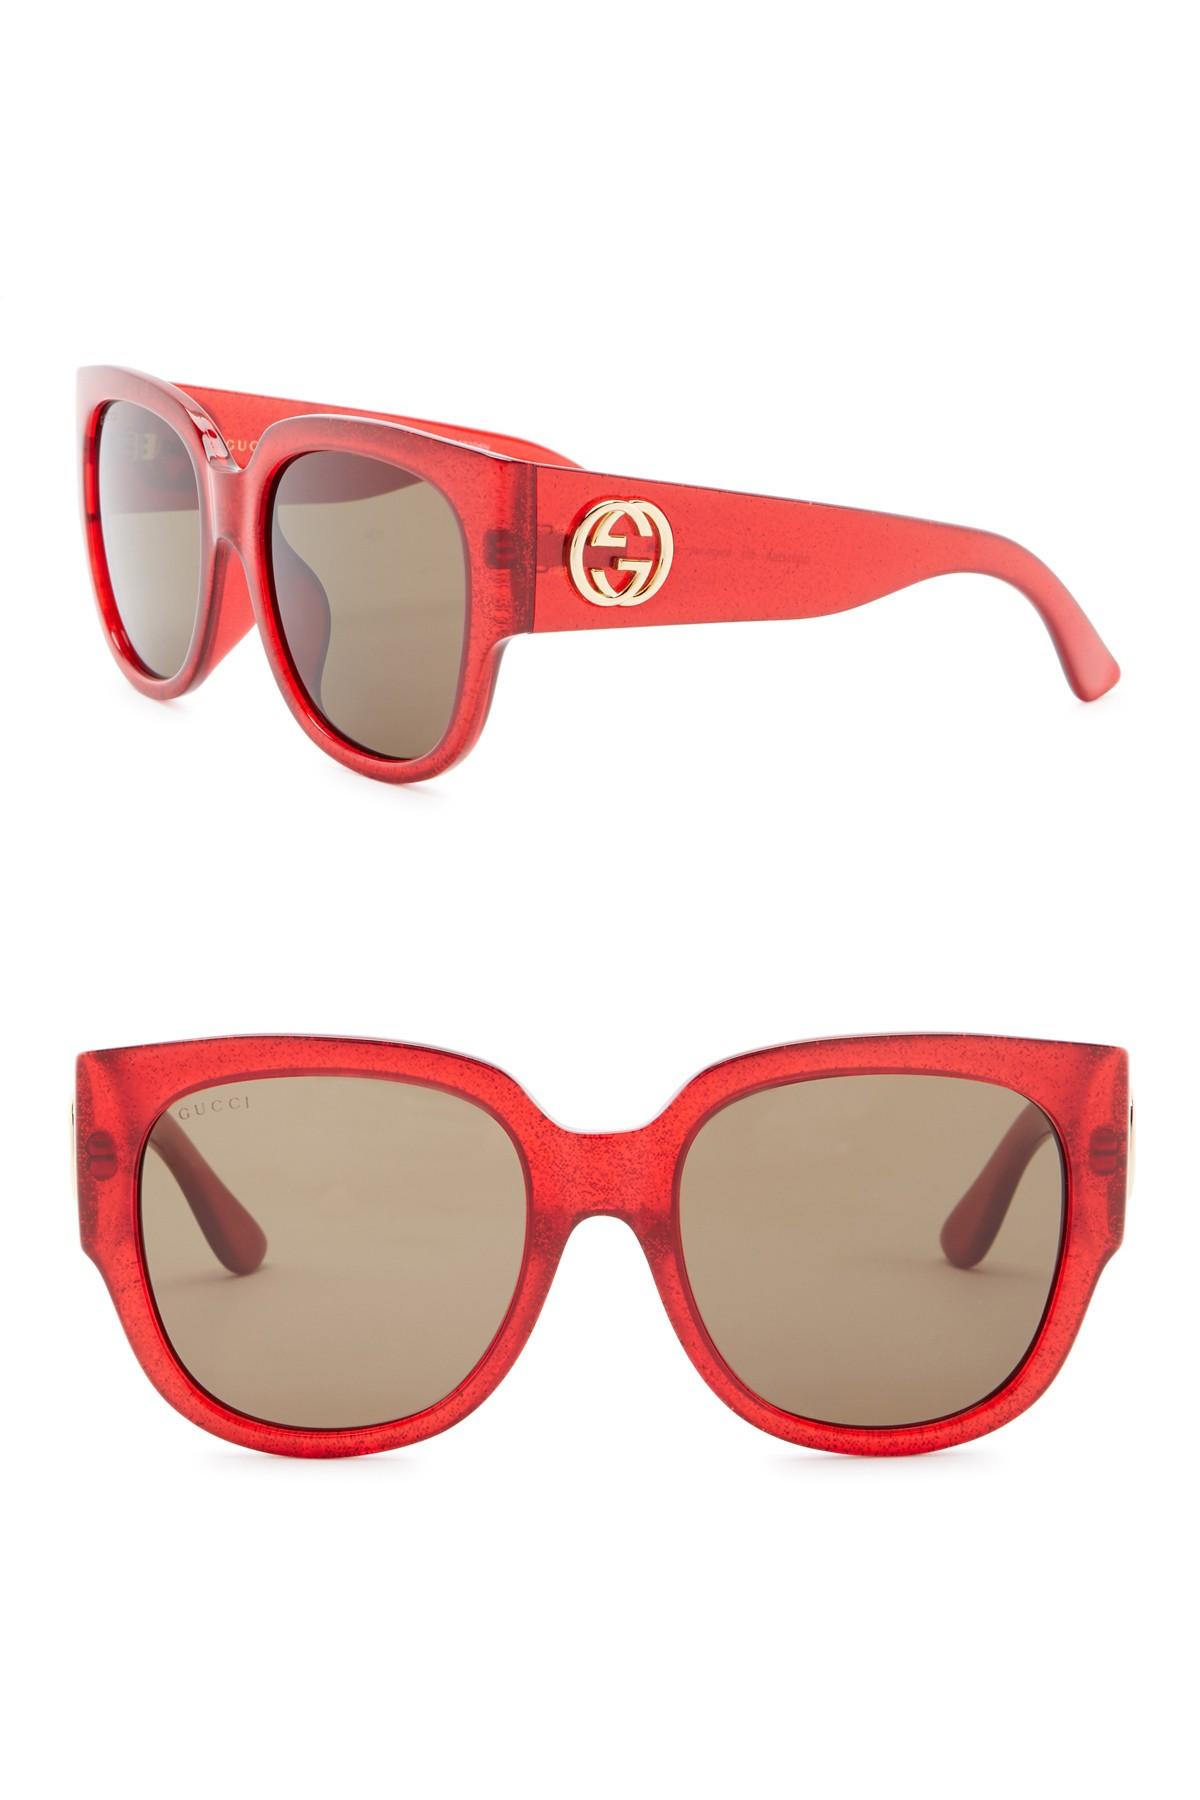 red glitter gucci sunglasses